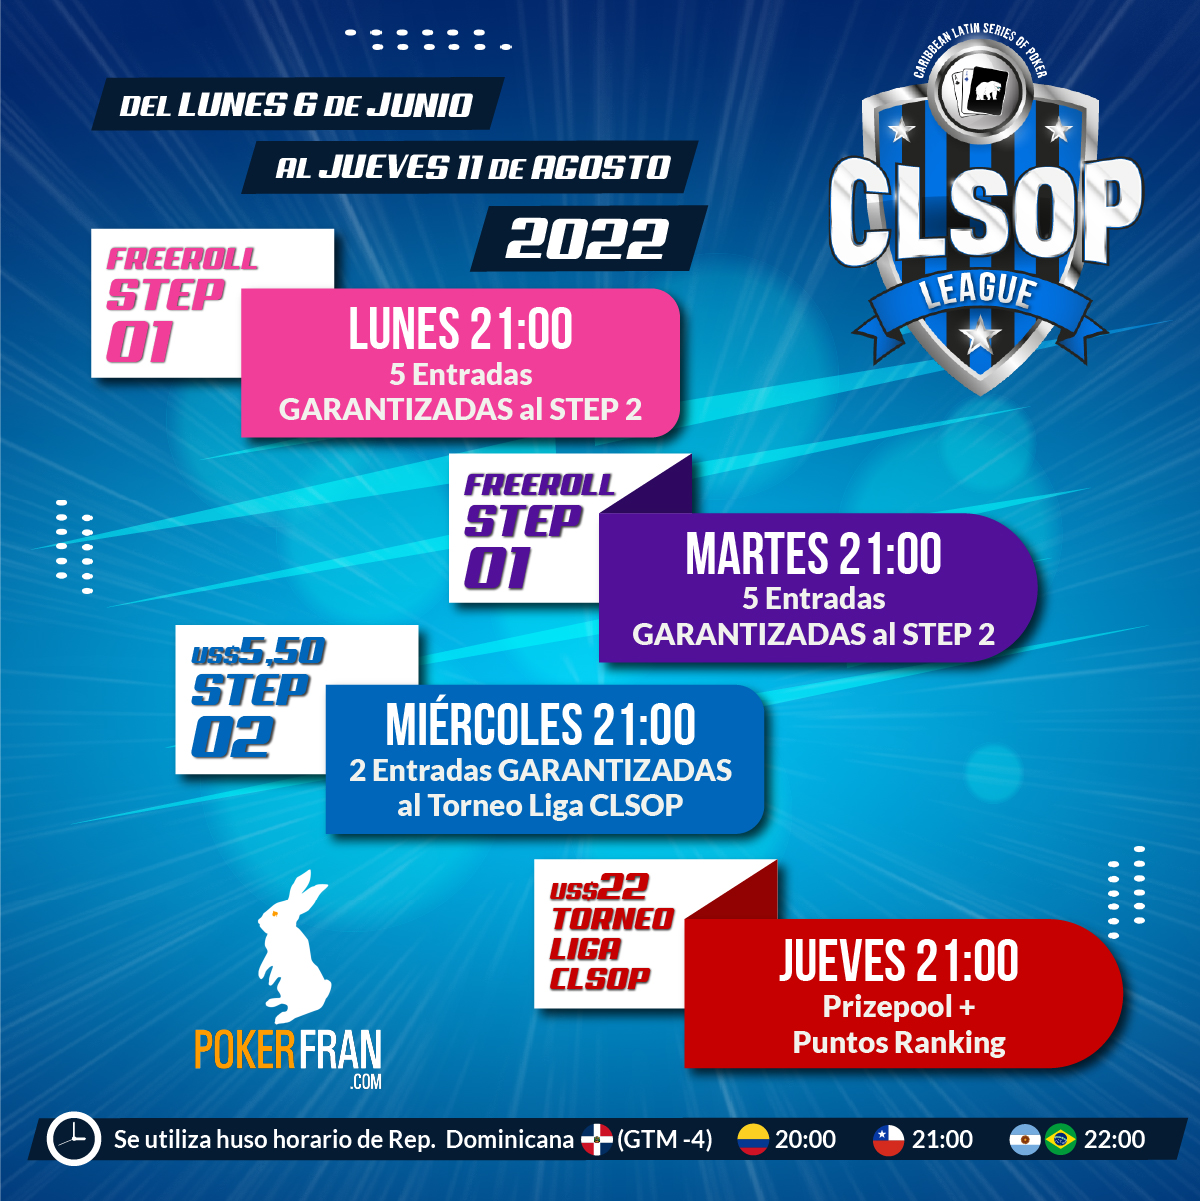 Infografia CLSOP League POST